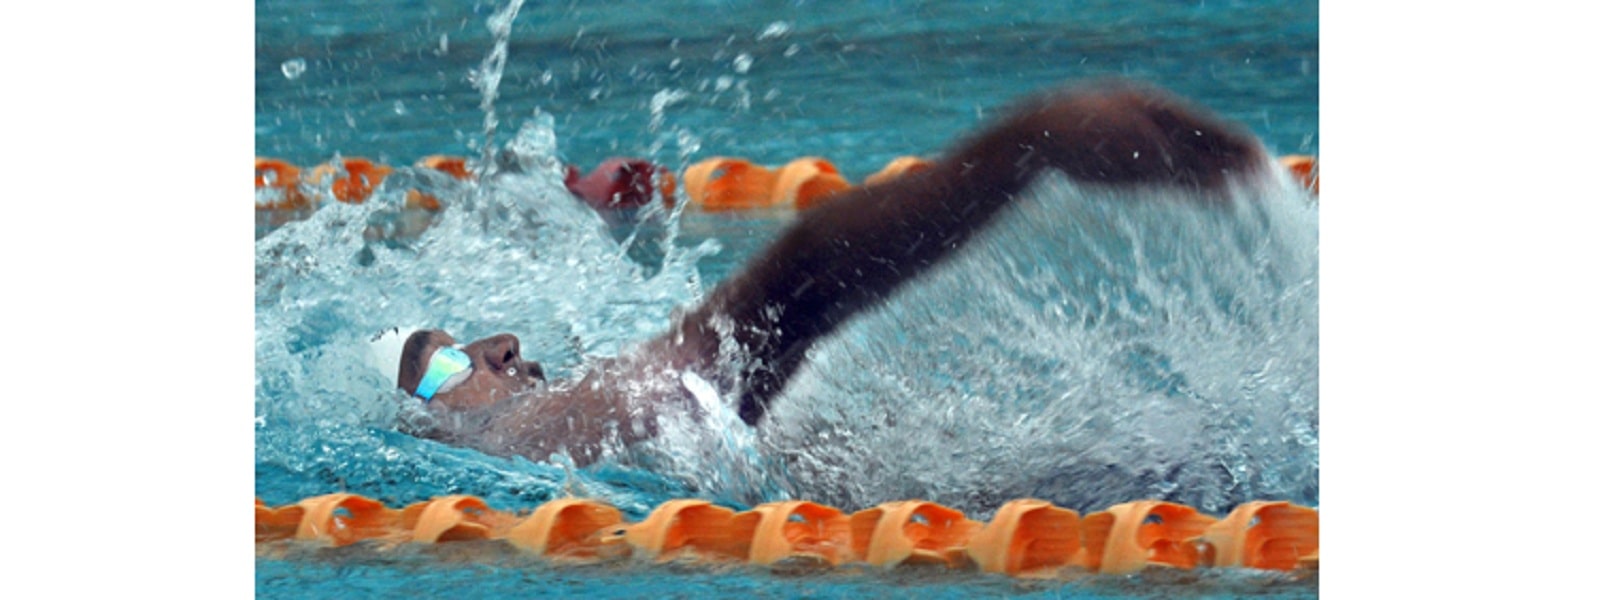 2022 பொதுநலவாய விளையாட்டுகள்: Backstroke நீச்சல் போட்டியில் அகலங்க பீரிஸ் புதிய இலங்கை சாதனை